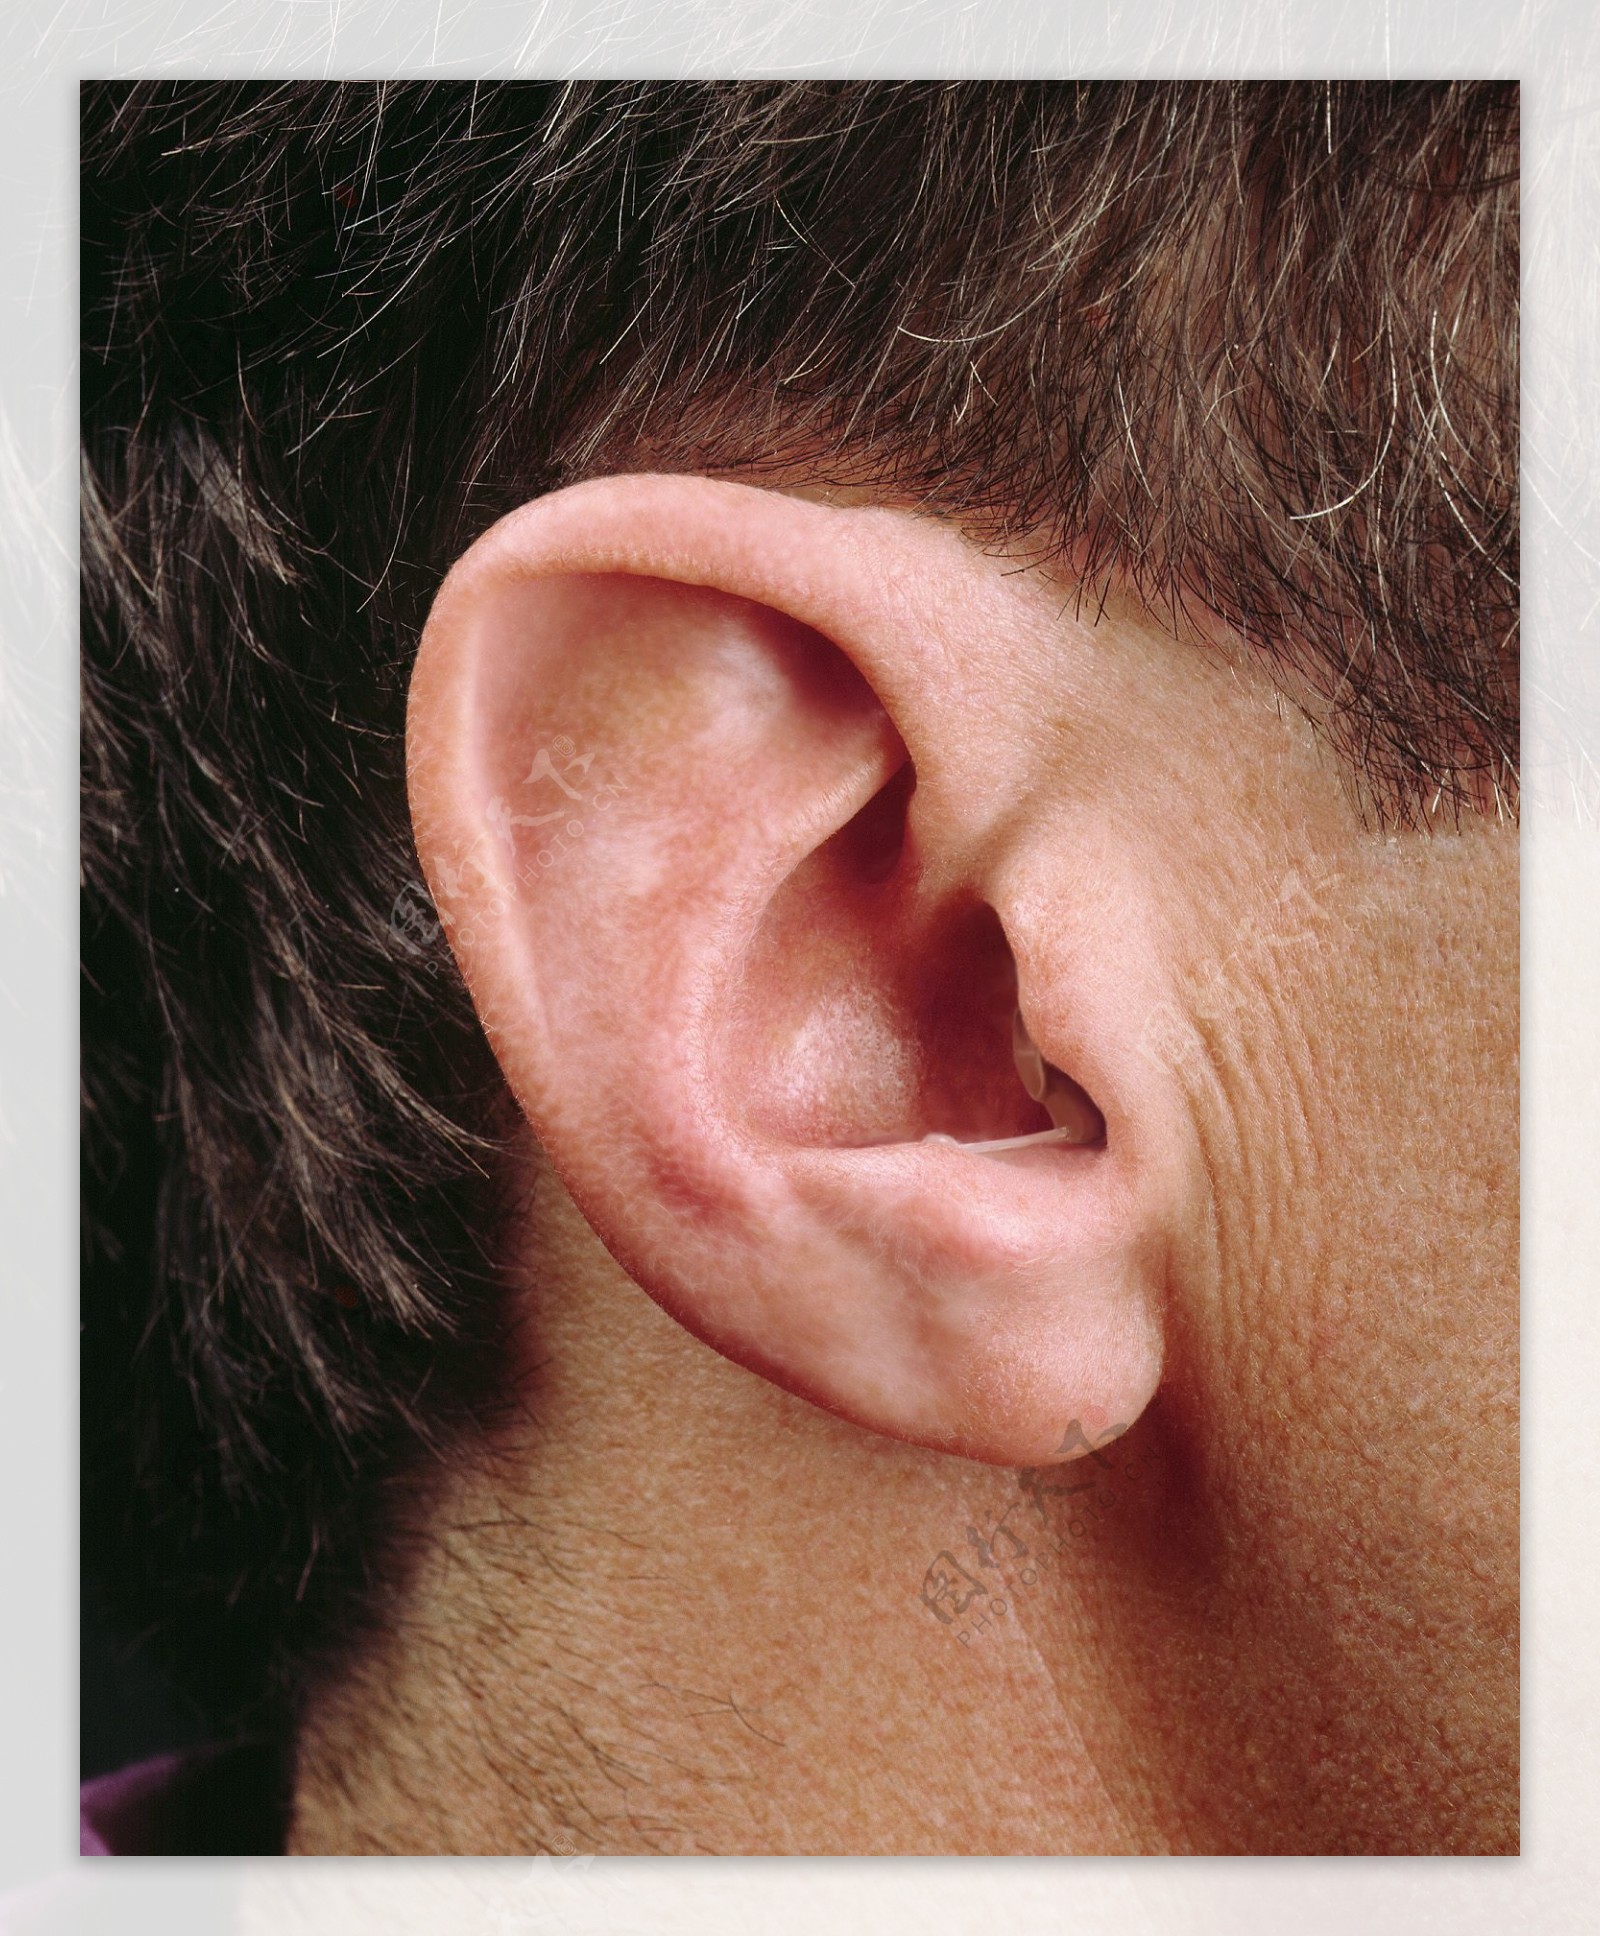 深耳道式助听器外观极隐蔽图片